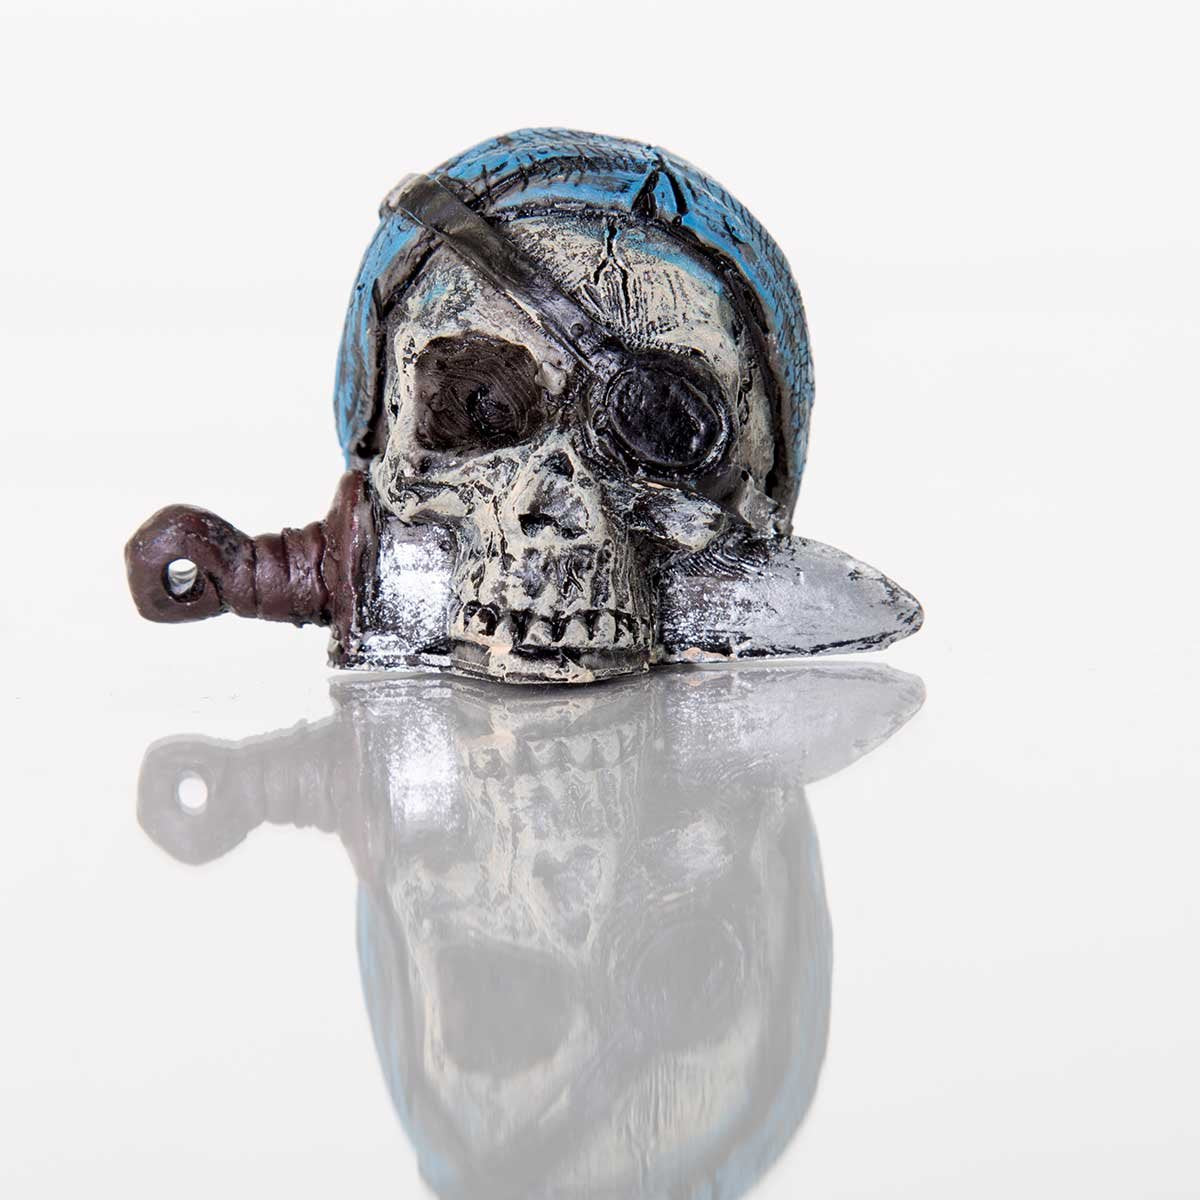 Pirate Skull Ornament 